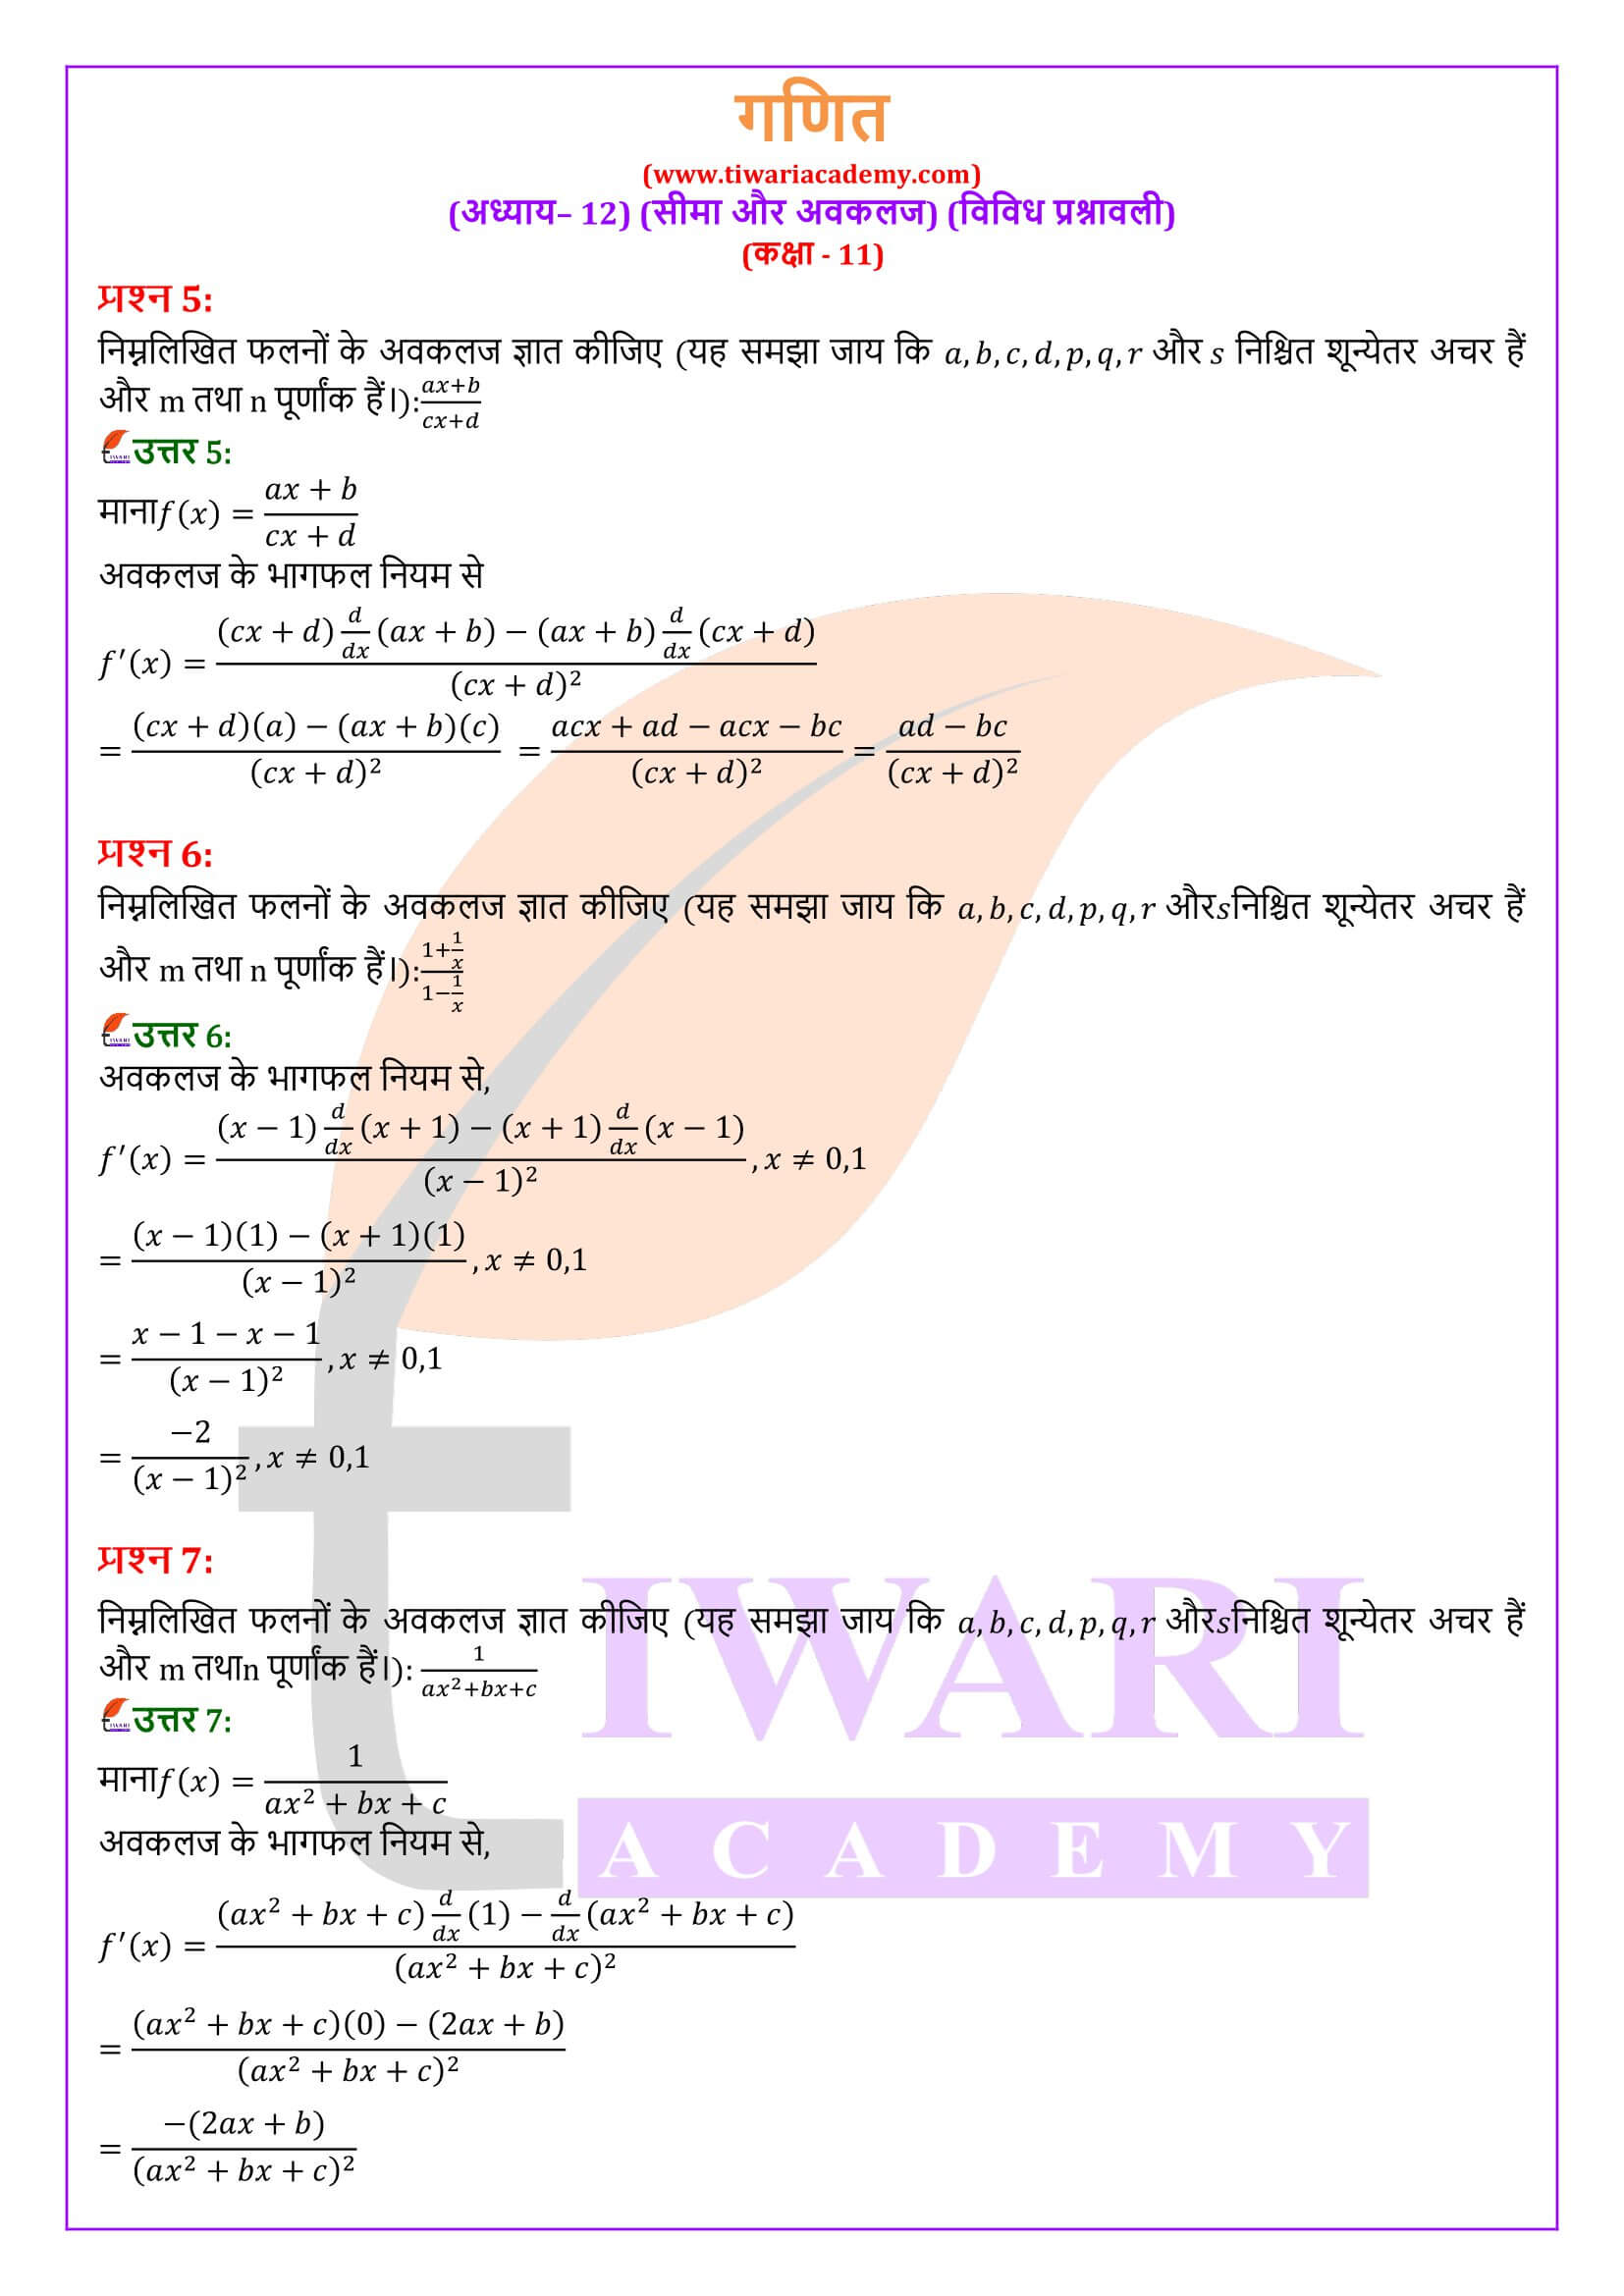 एनसीईआरटी समाधान कक्षा 11 गणित अध्याय 12 विविध प्रश्नावली हिंदी में